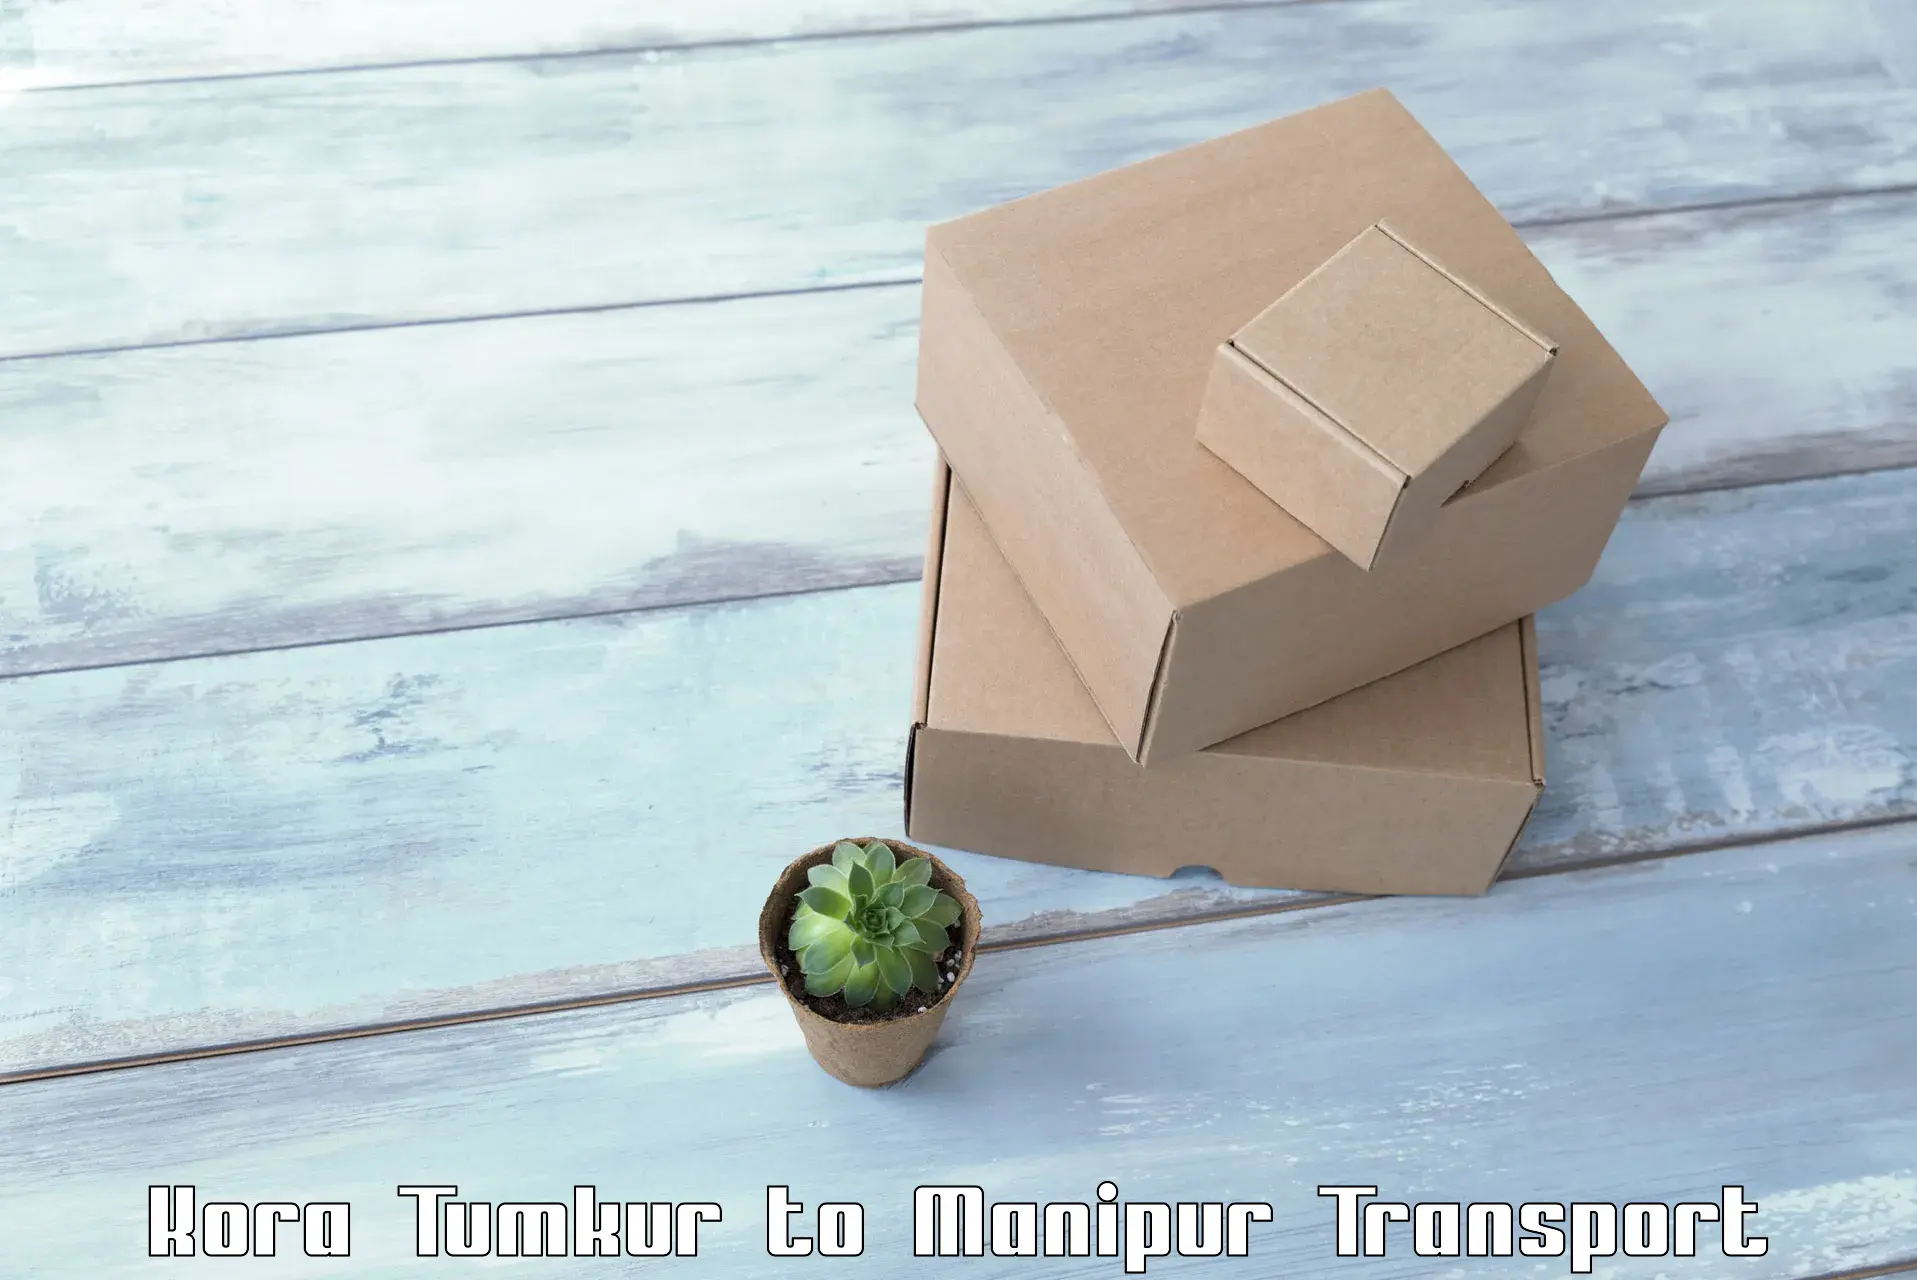 Vehicle transport services Kora Tumkur to IIIT Senapati